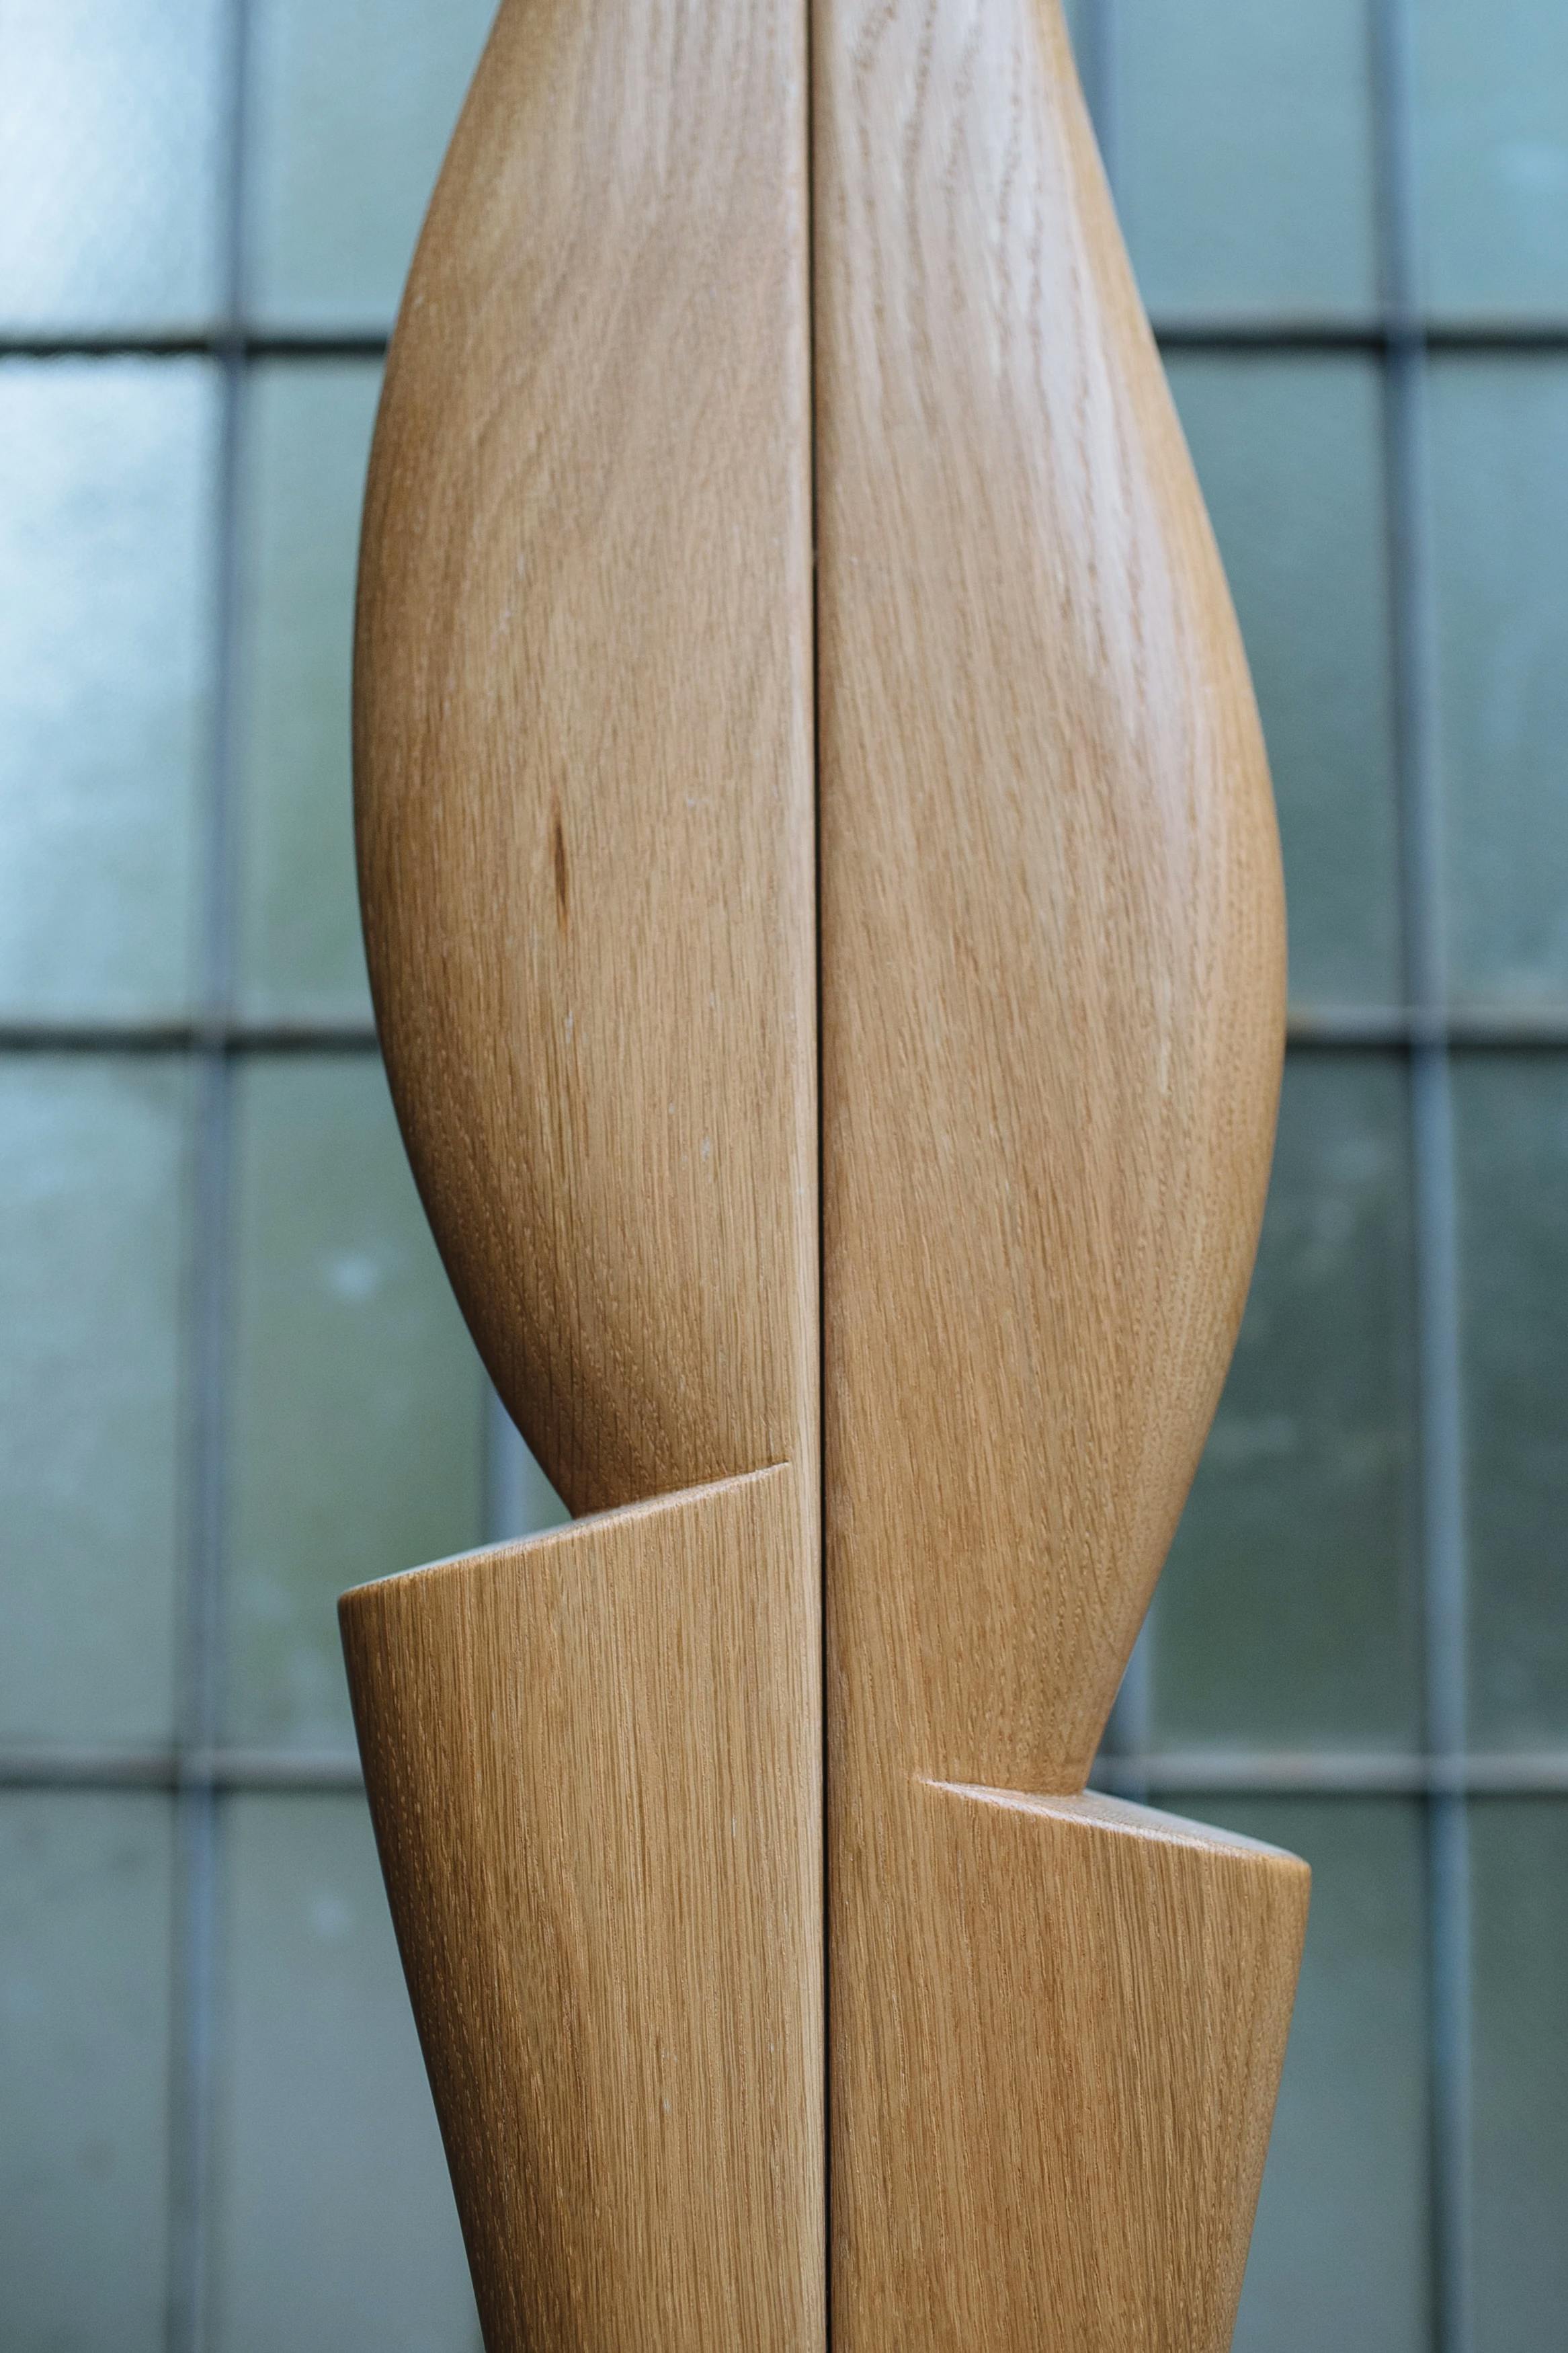 Close-up of a wooden sculpture by artist Fitzhugh Karol.